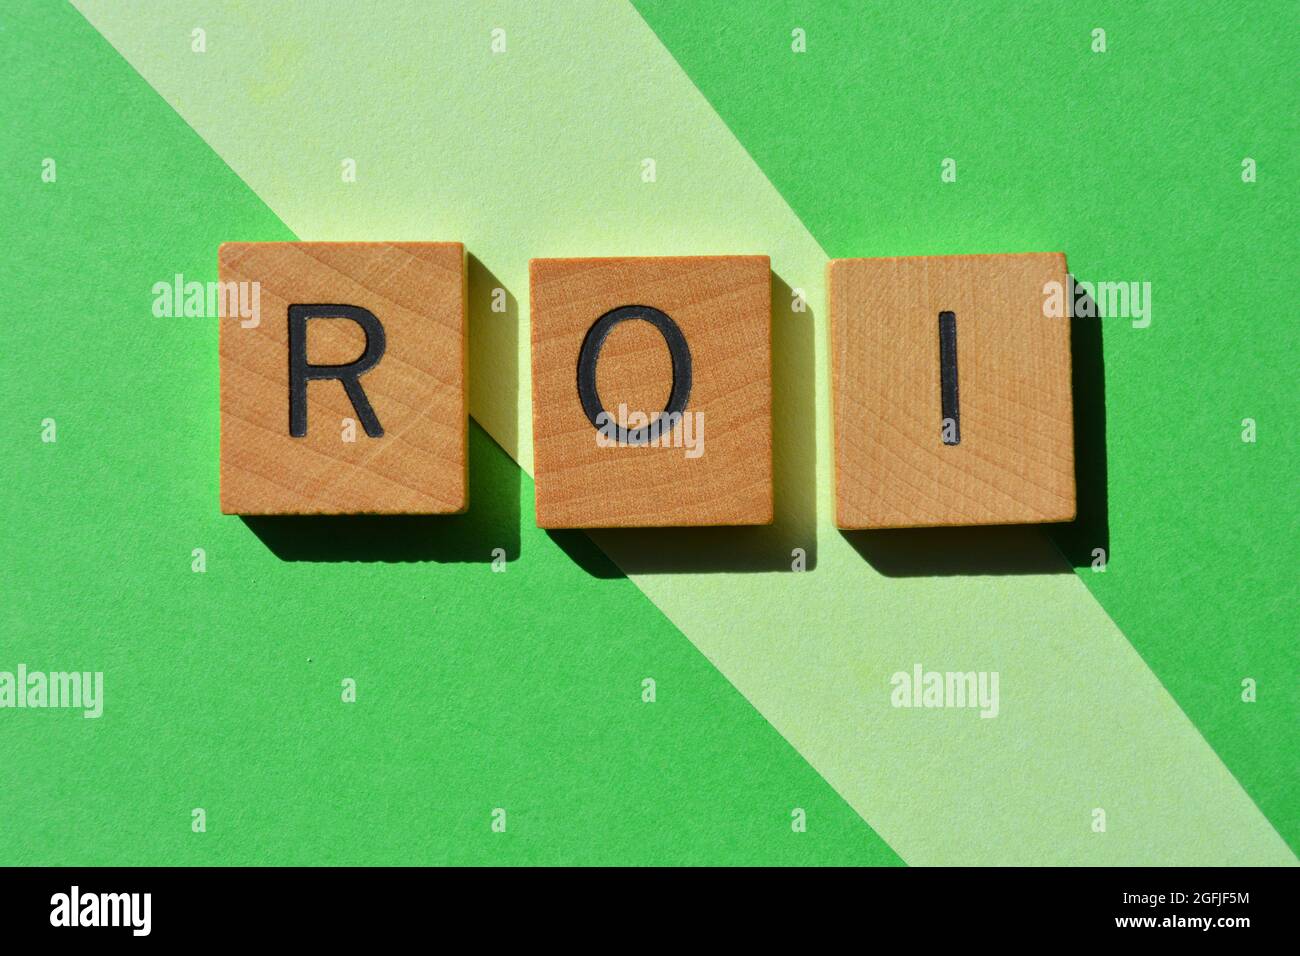 Roi, acronyme de Return on Investment, en lettres de l'alphabet en bois isolées sur fond vert Banque D'Images